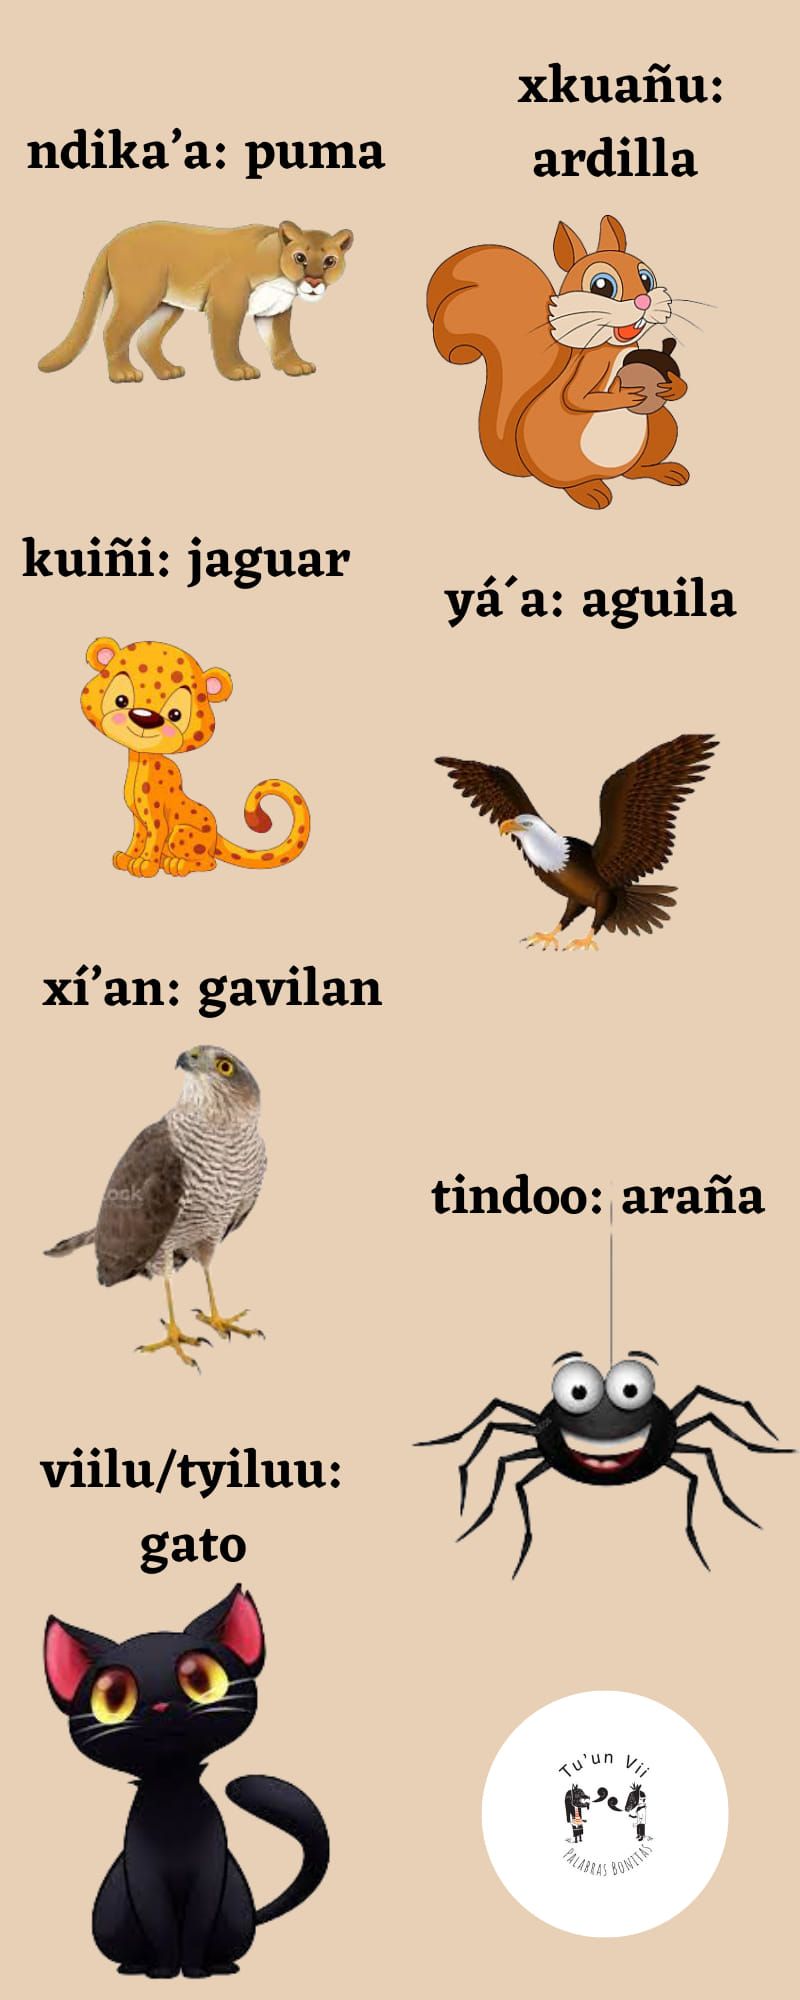 Cartoon animals, labeled in Mixtec and Spanish

Nombre de los animales en mixteco, elaborado por Izaira López Sánchez